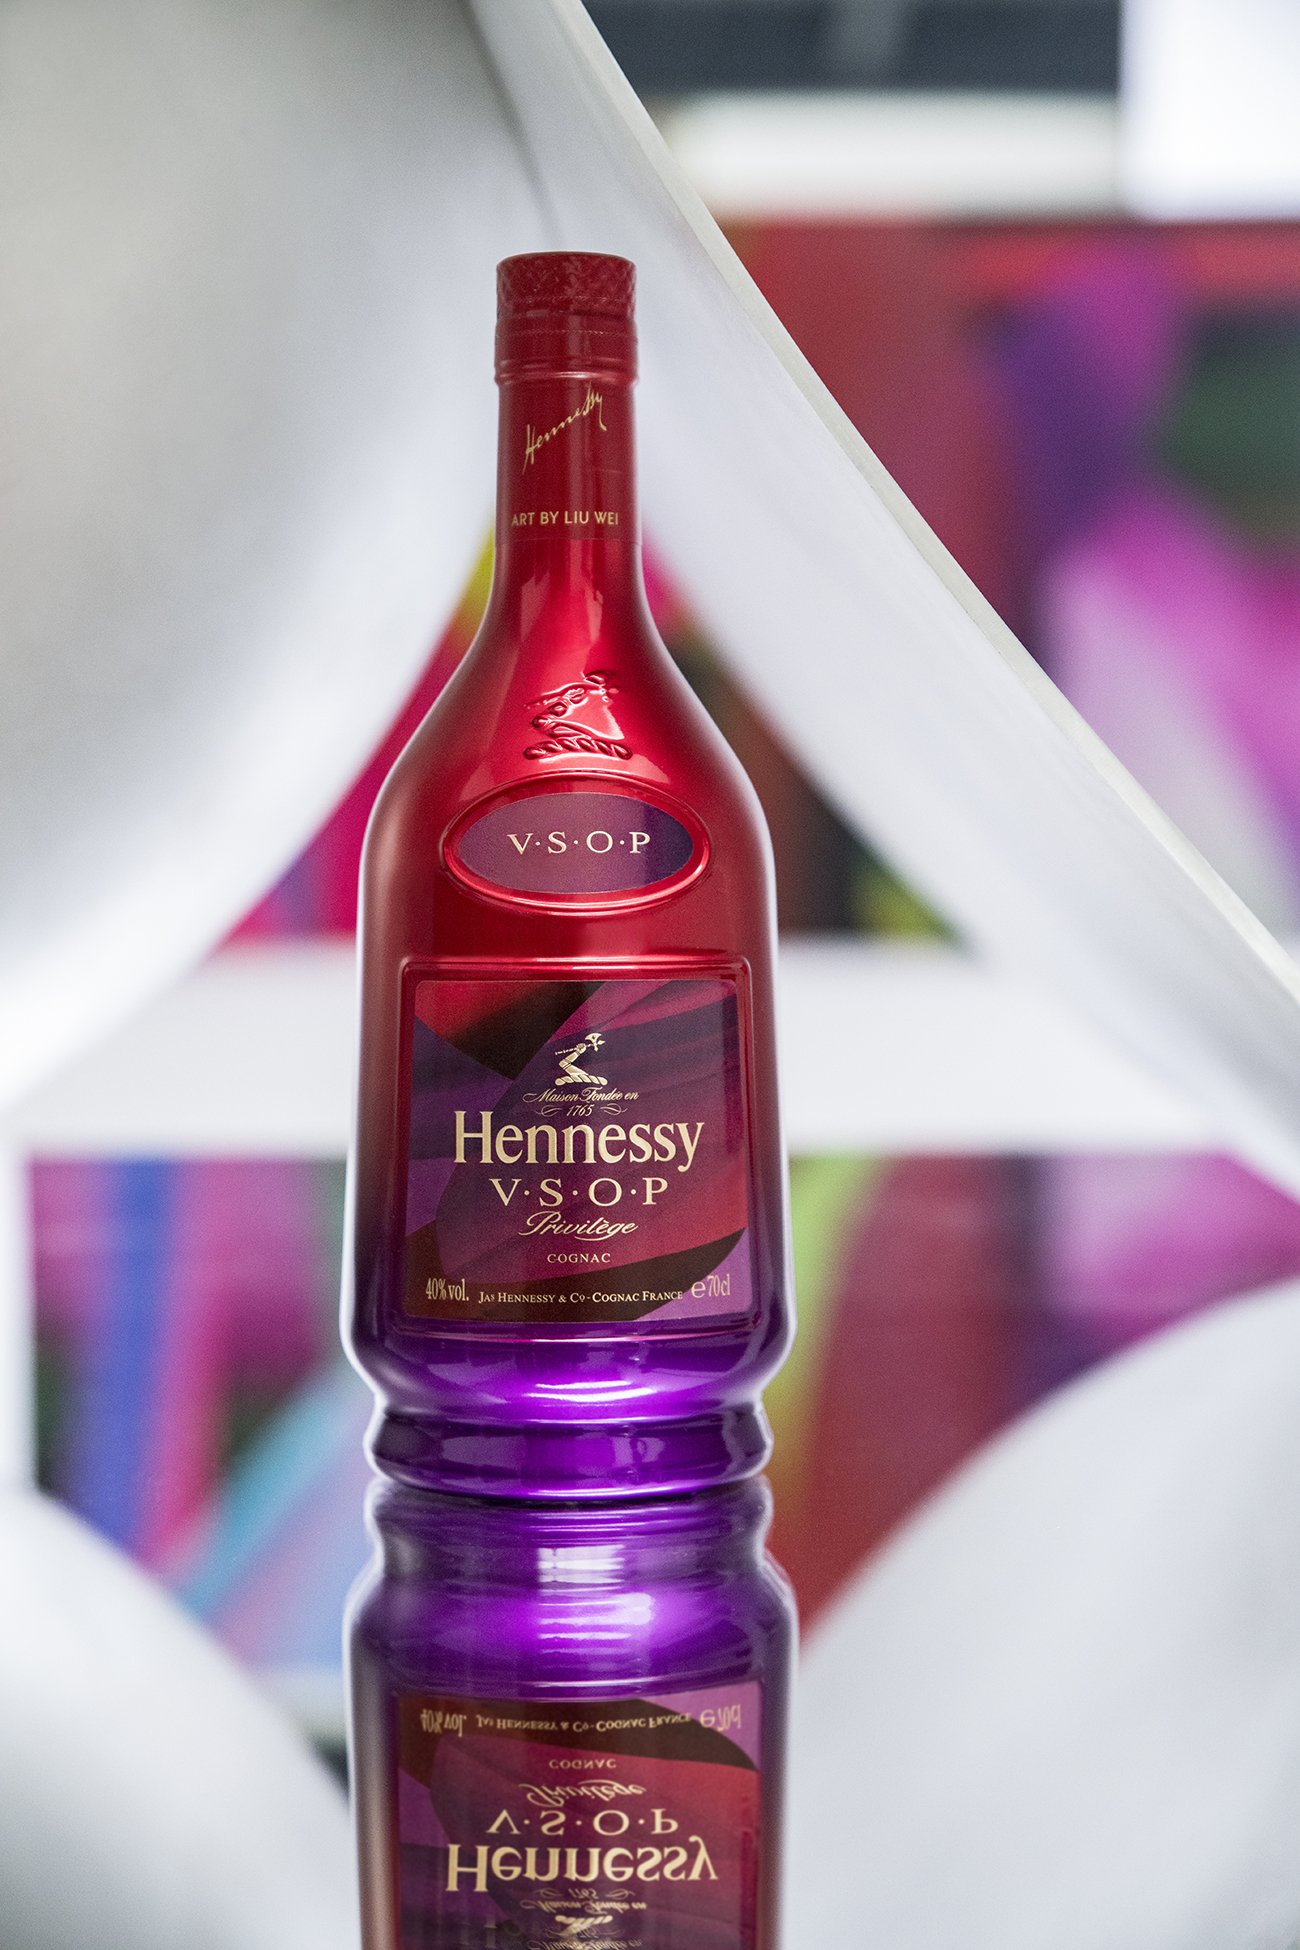 LVMH nomme un nouveau patron pour Moët Hennessy